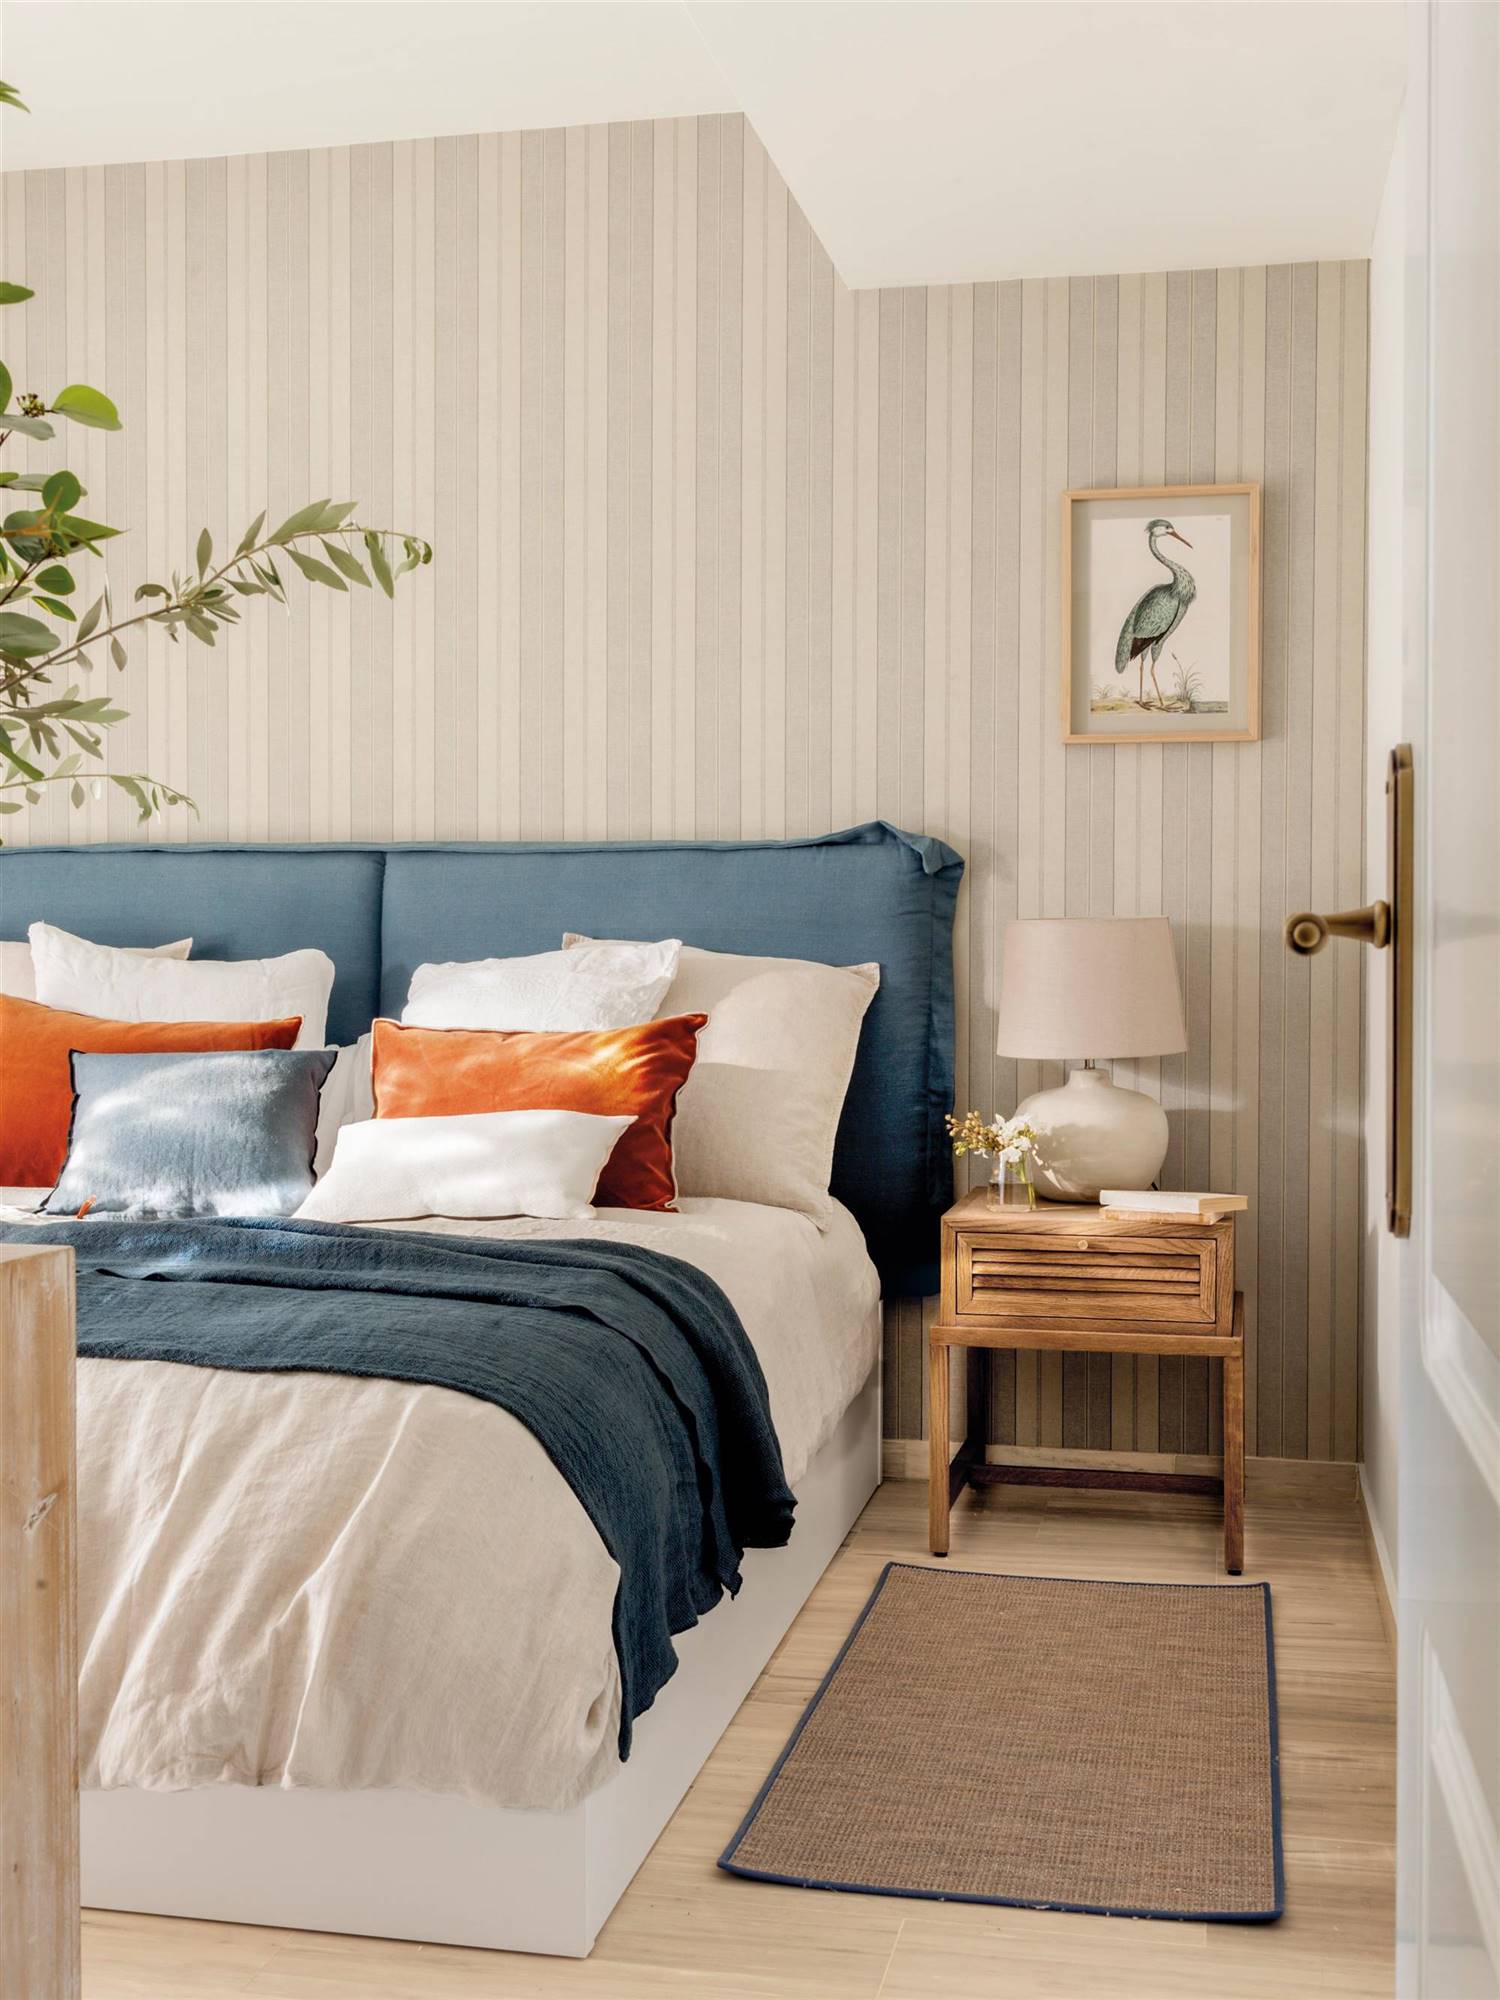 Dormitorio con cabecero tapizado en azul y papel pintado de rayas